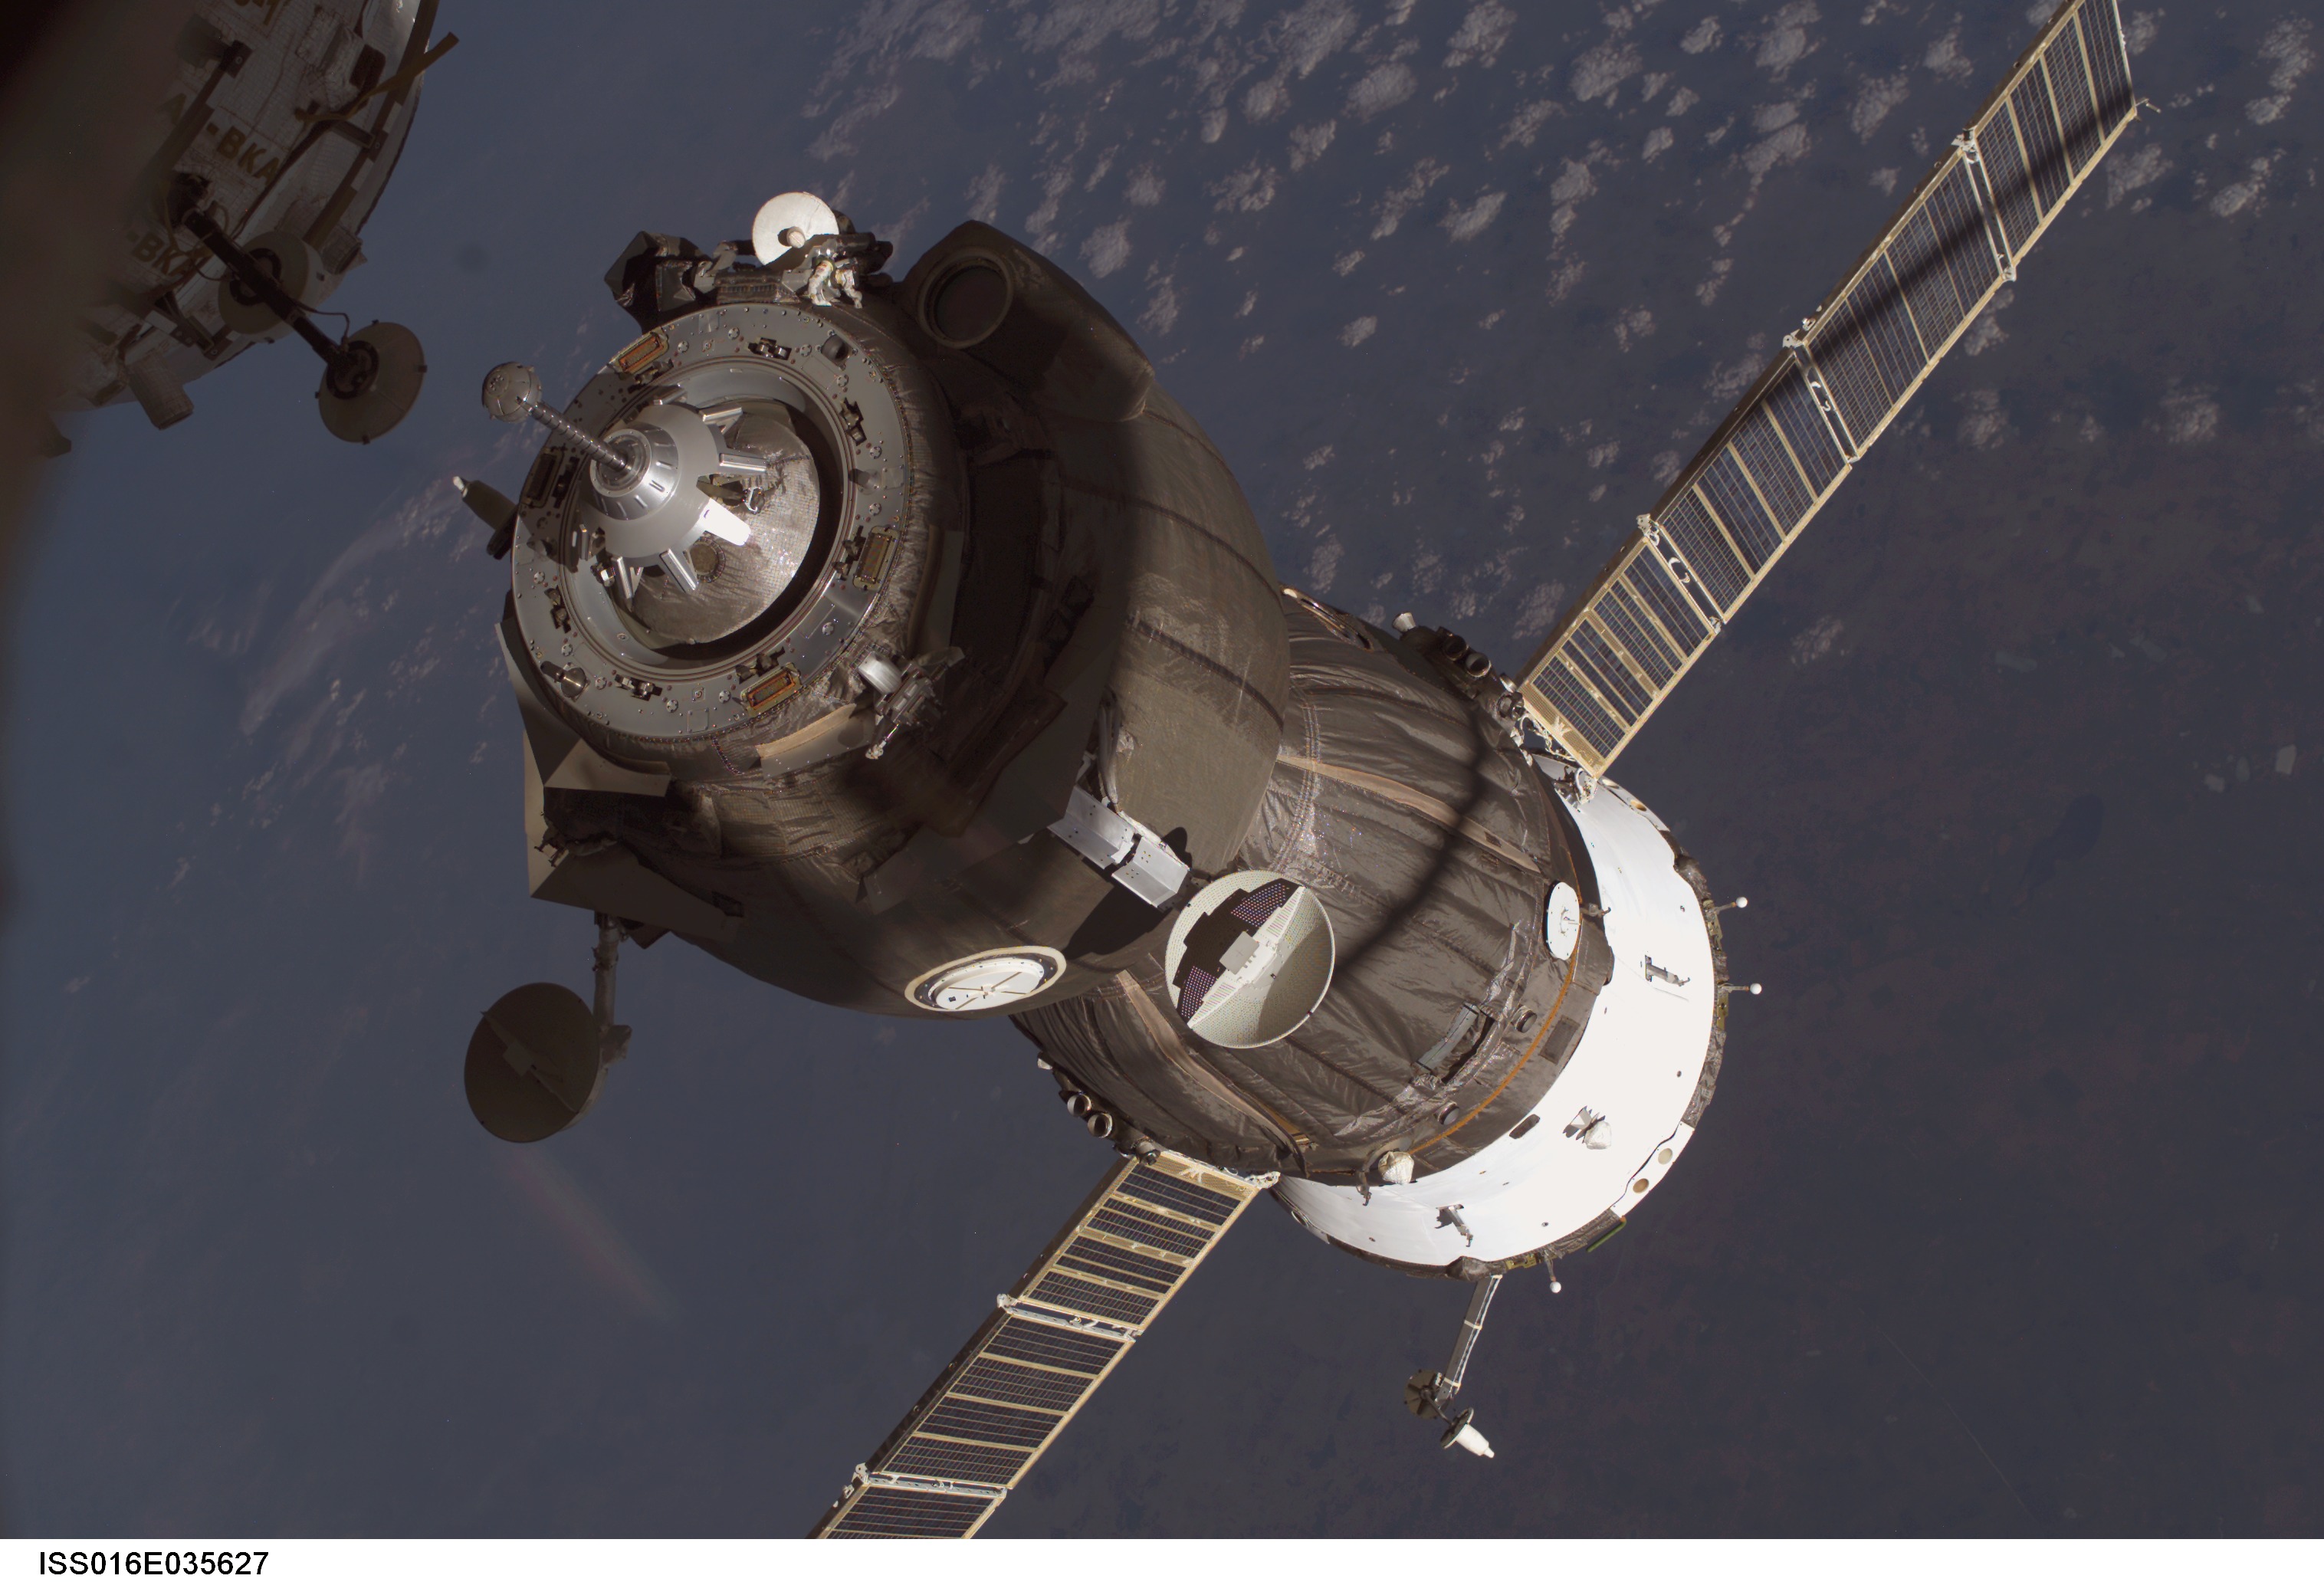 Korabl' "Soyuz" stykuetsya s Mezhdunarodnoi kosmicheskoi stanciei